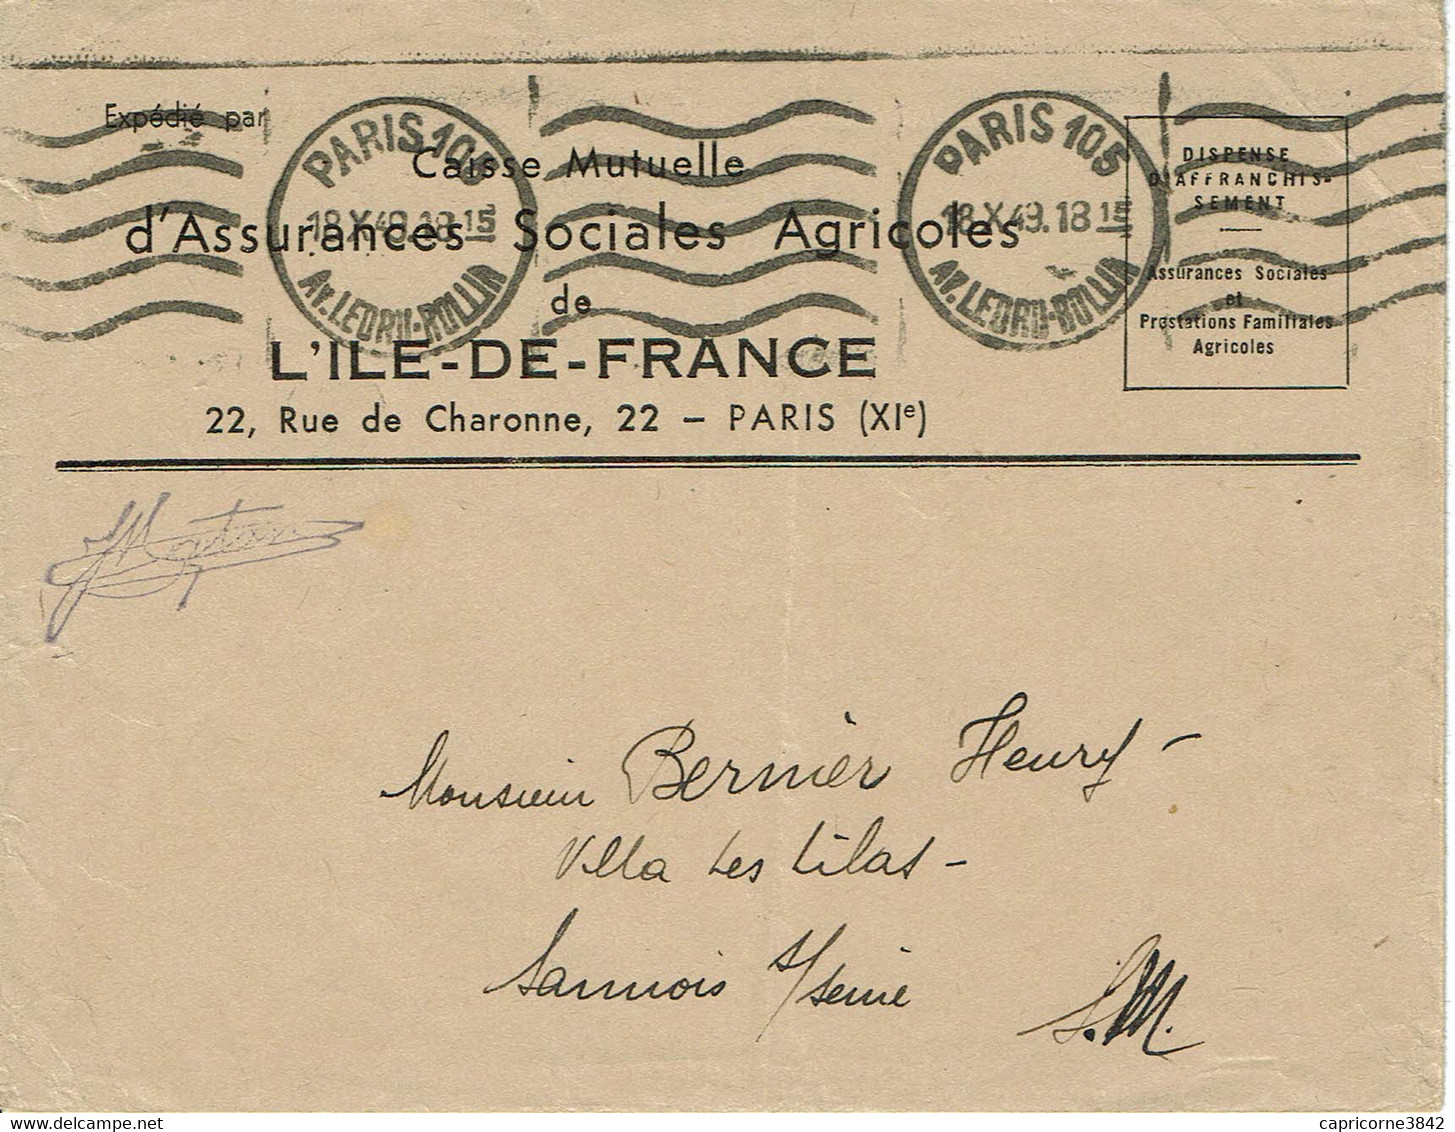 1943 - Lettre En Franchise Postale De La Caisse Mutuelle D'Assurances Sociales Agricoles - Oblit. Machine KRAG - Civil Frank Covers